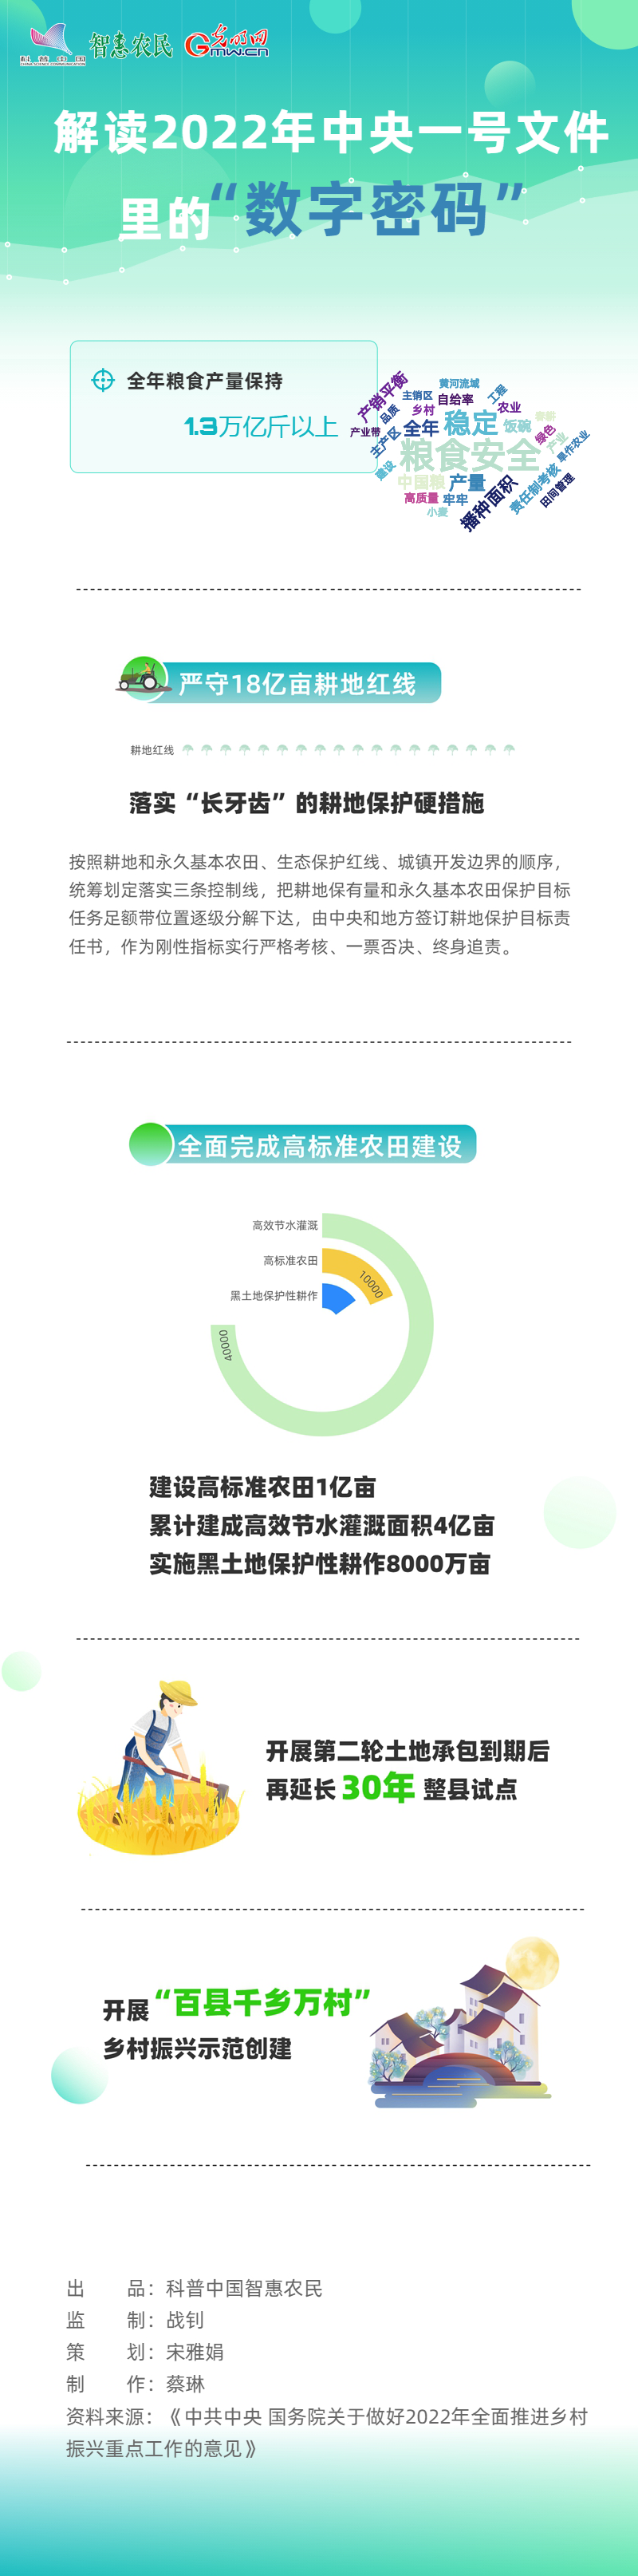 【科普中国智惠农民】解读2022年中央一号文件里的“数字密码”